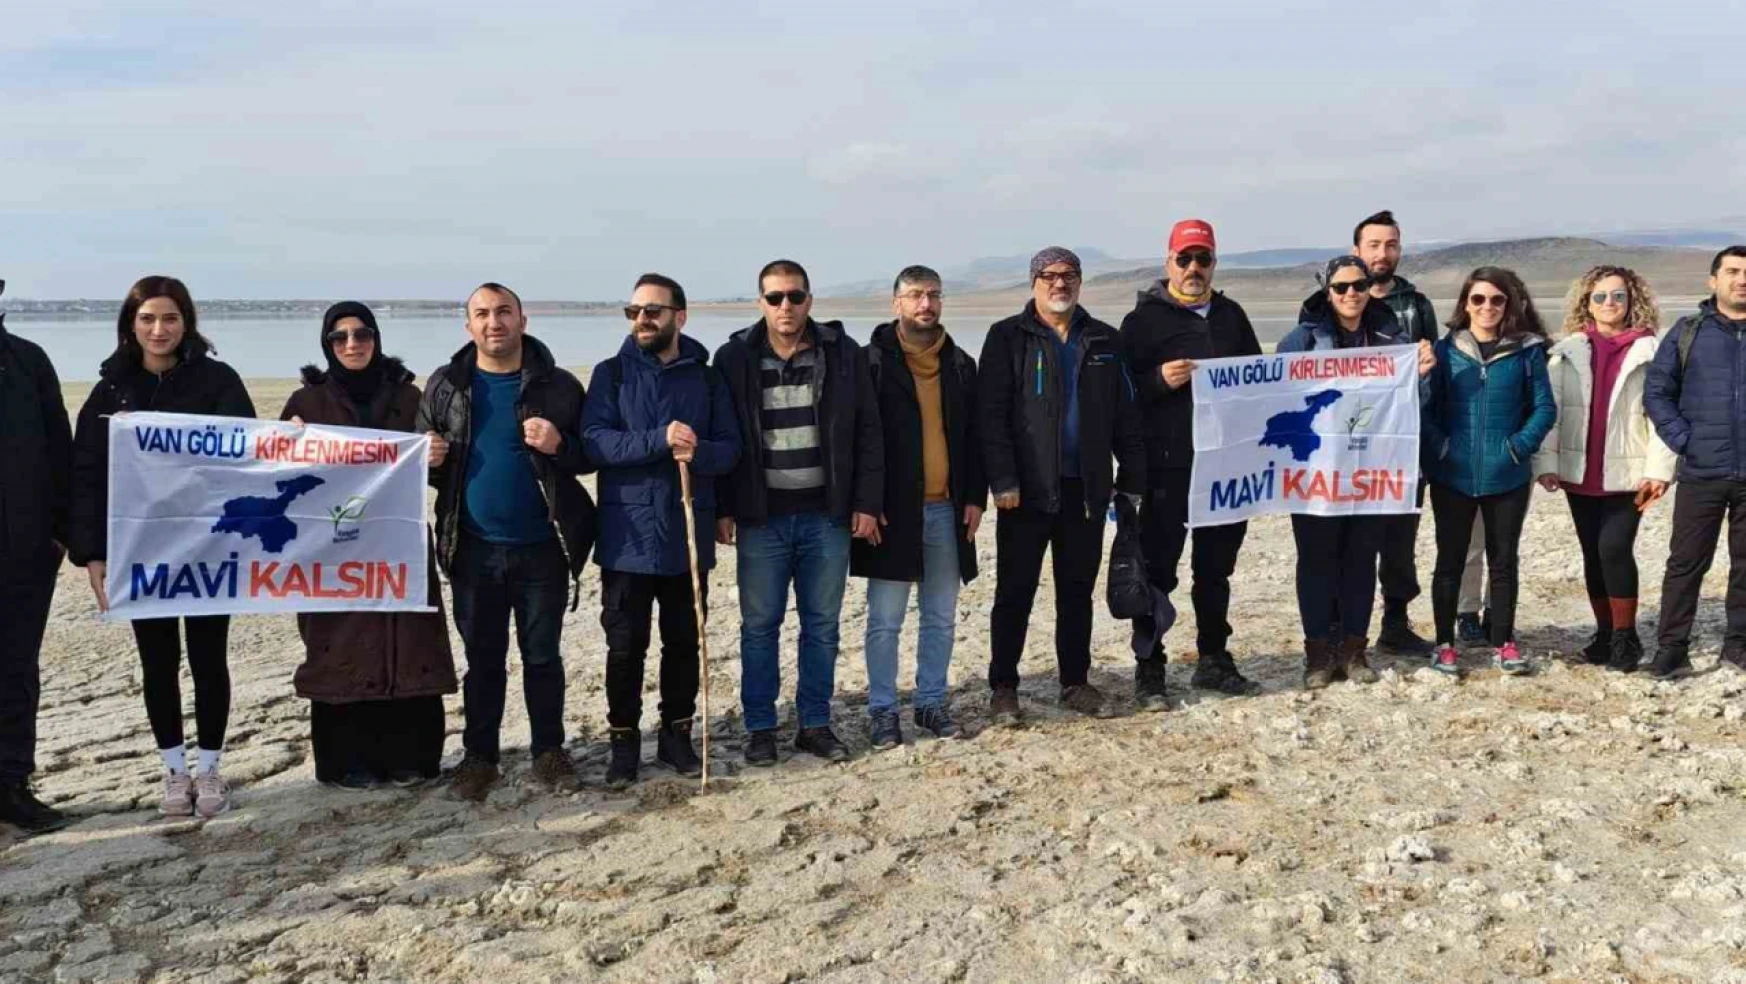 Van Gölü Aktivistleri Arin Gölü için 15 kilometre yürüdü